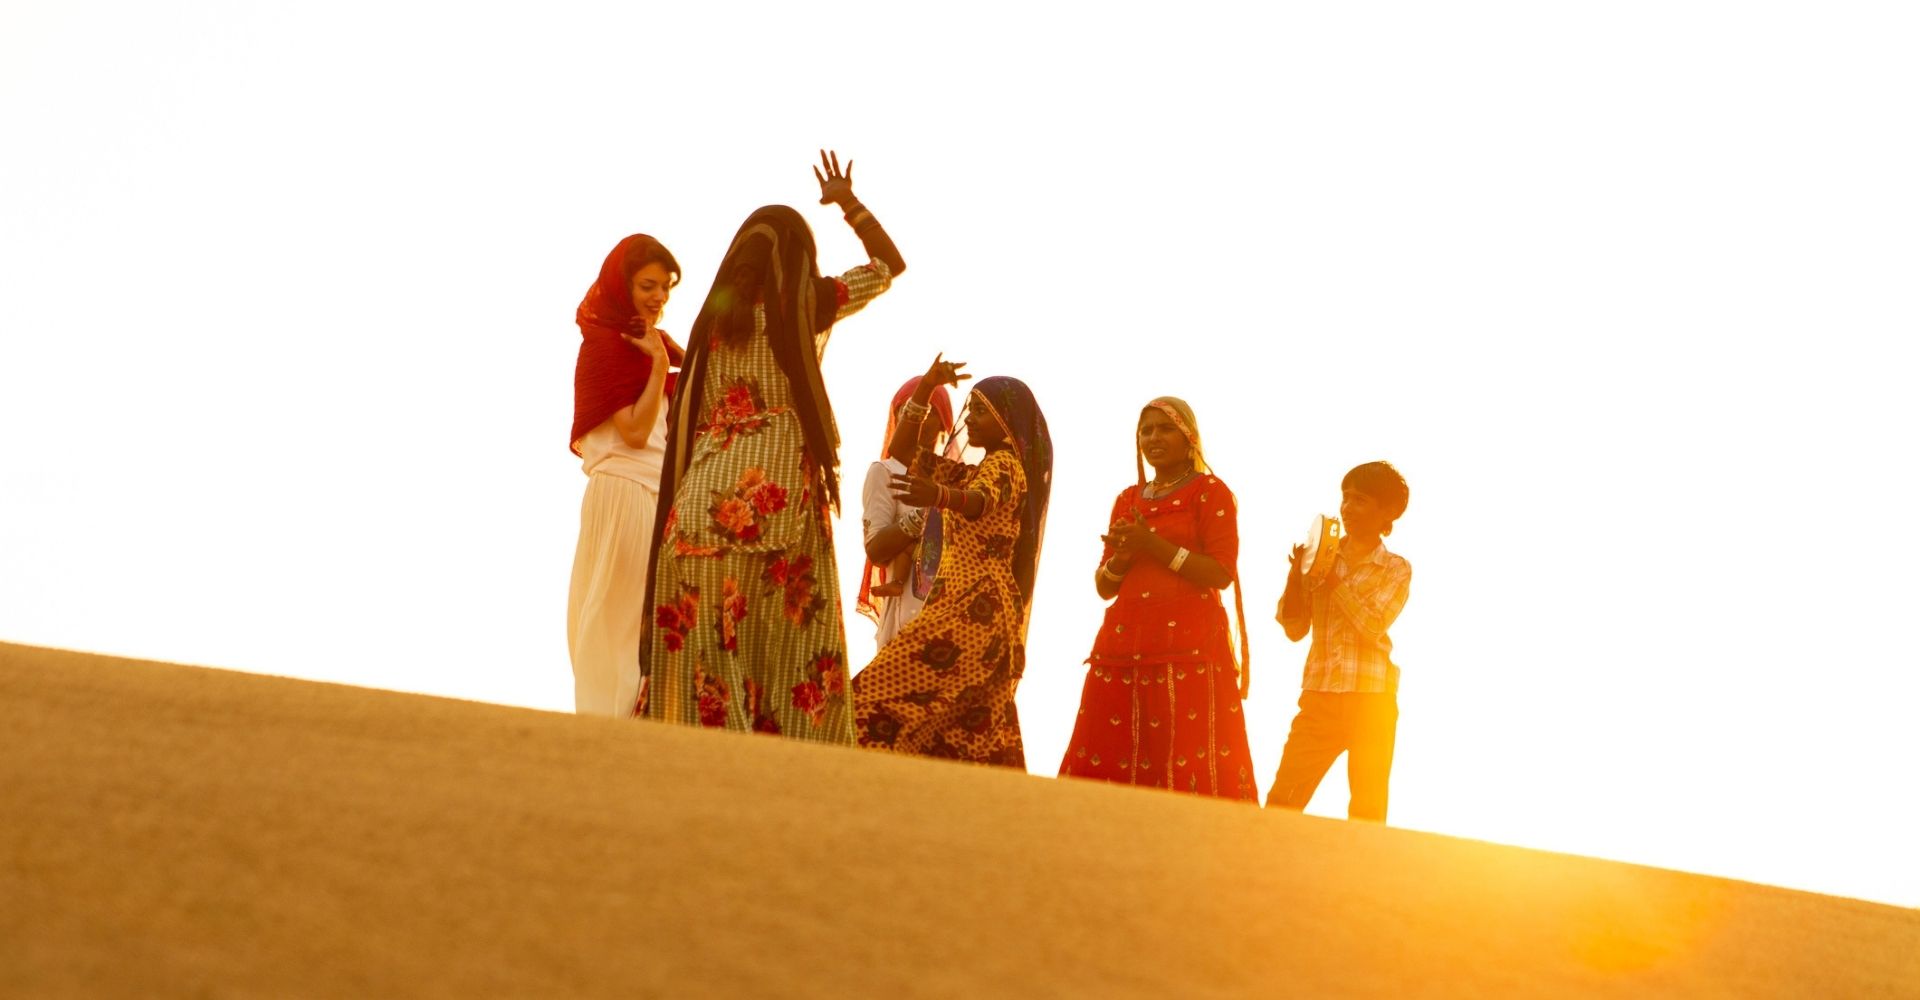 Delle donne appartenenti alla comunità Rom ballano nel deserto